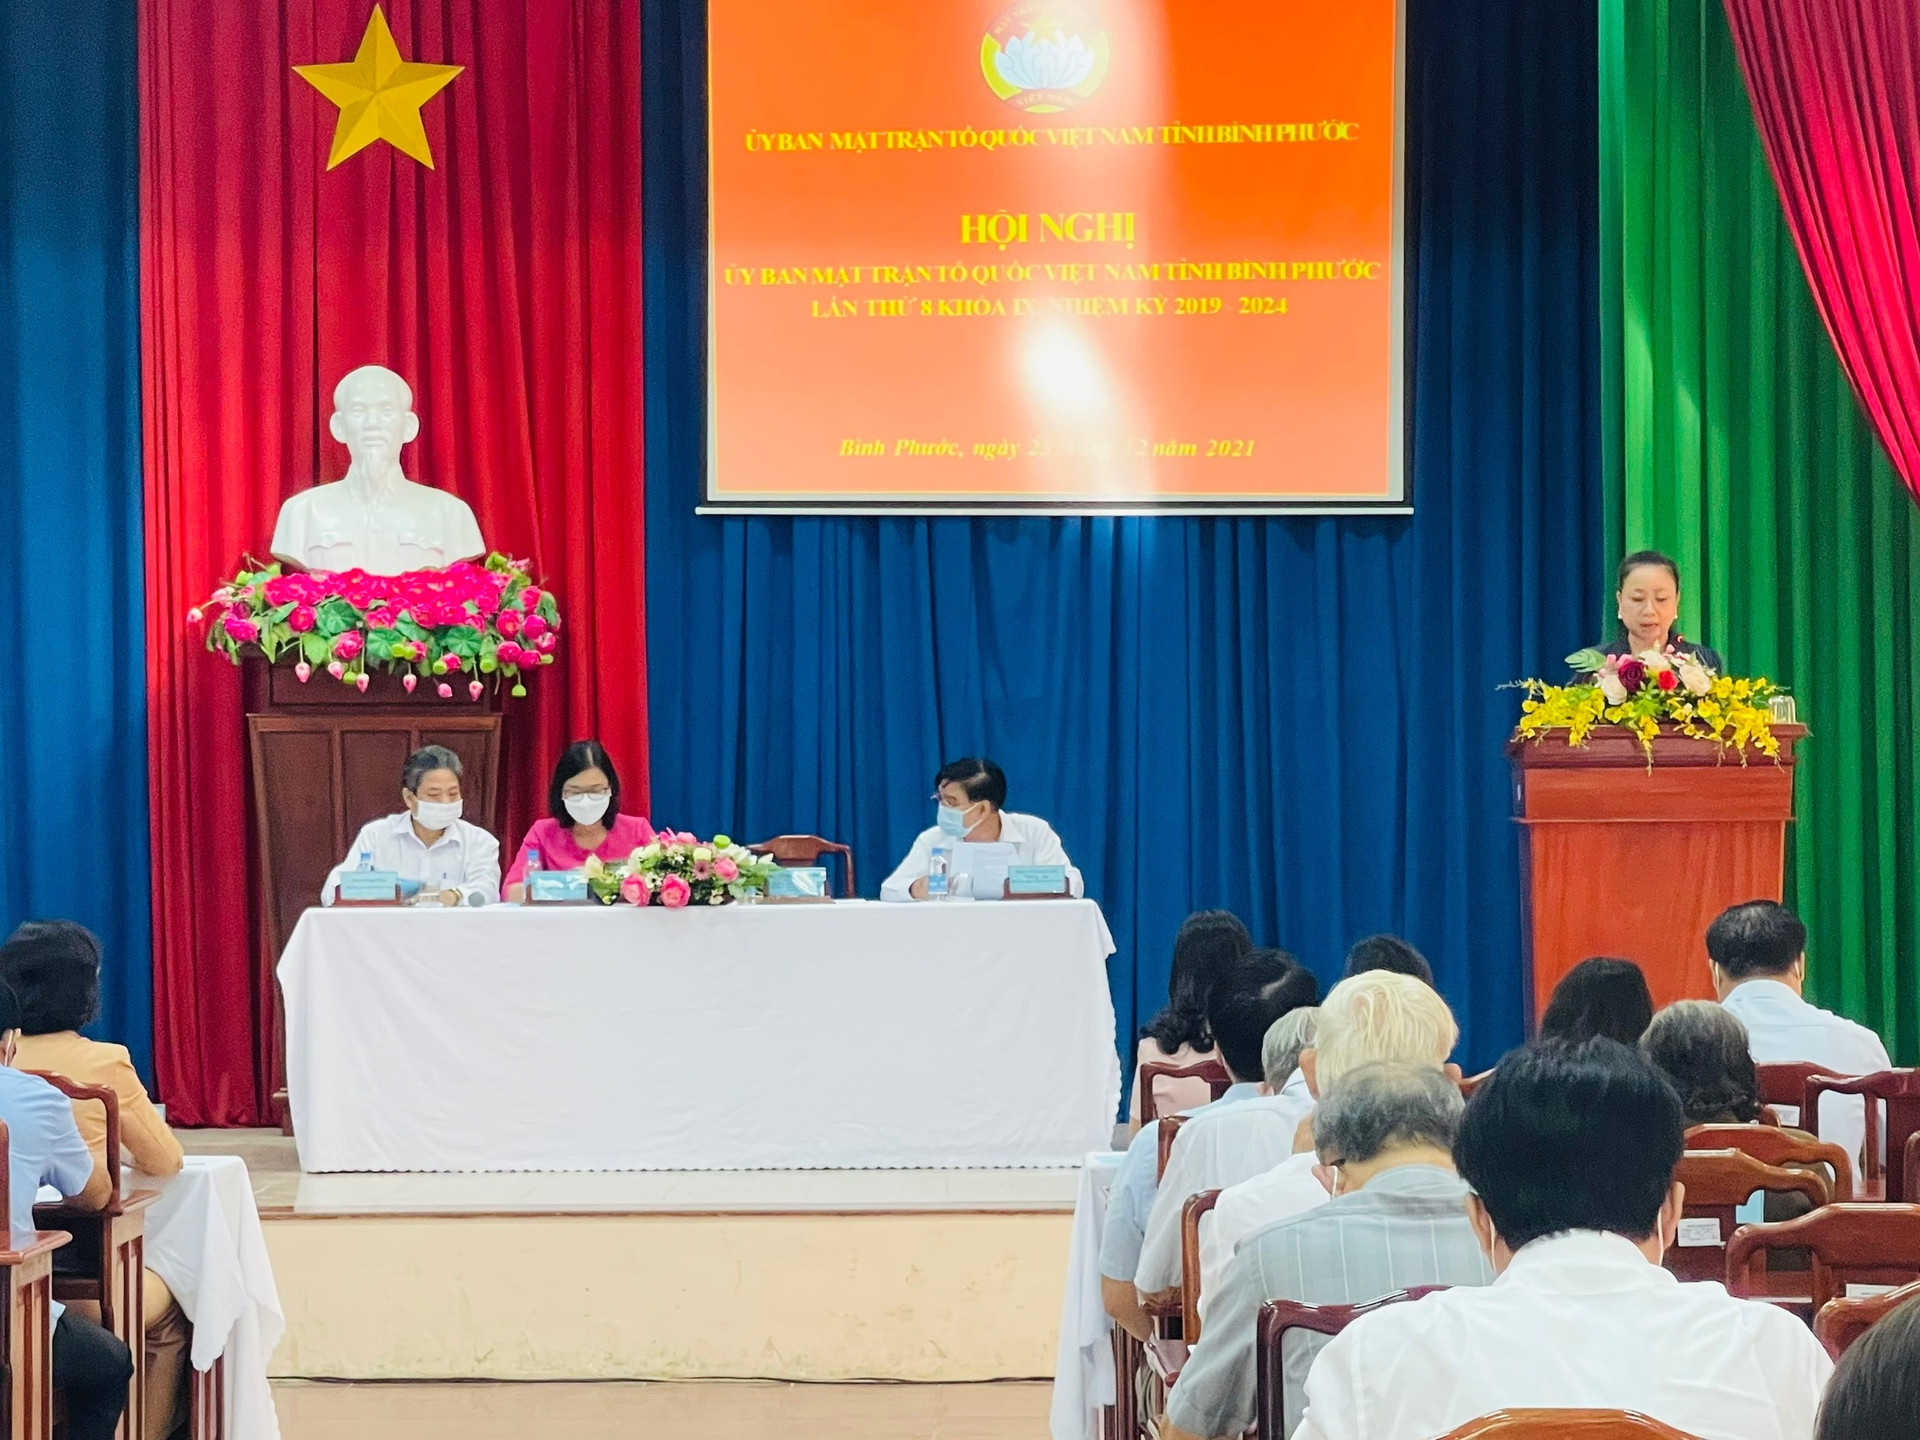 Bà Lê Thị Xuân Trang, Ủy viên ban Thường vụ Tỉnh ủy, Trưởng ban dân vận, Chủ tịch UBMTTQVN tỉnh phát biểu khai mạc Hội nghị.